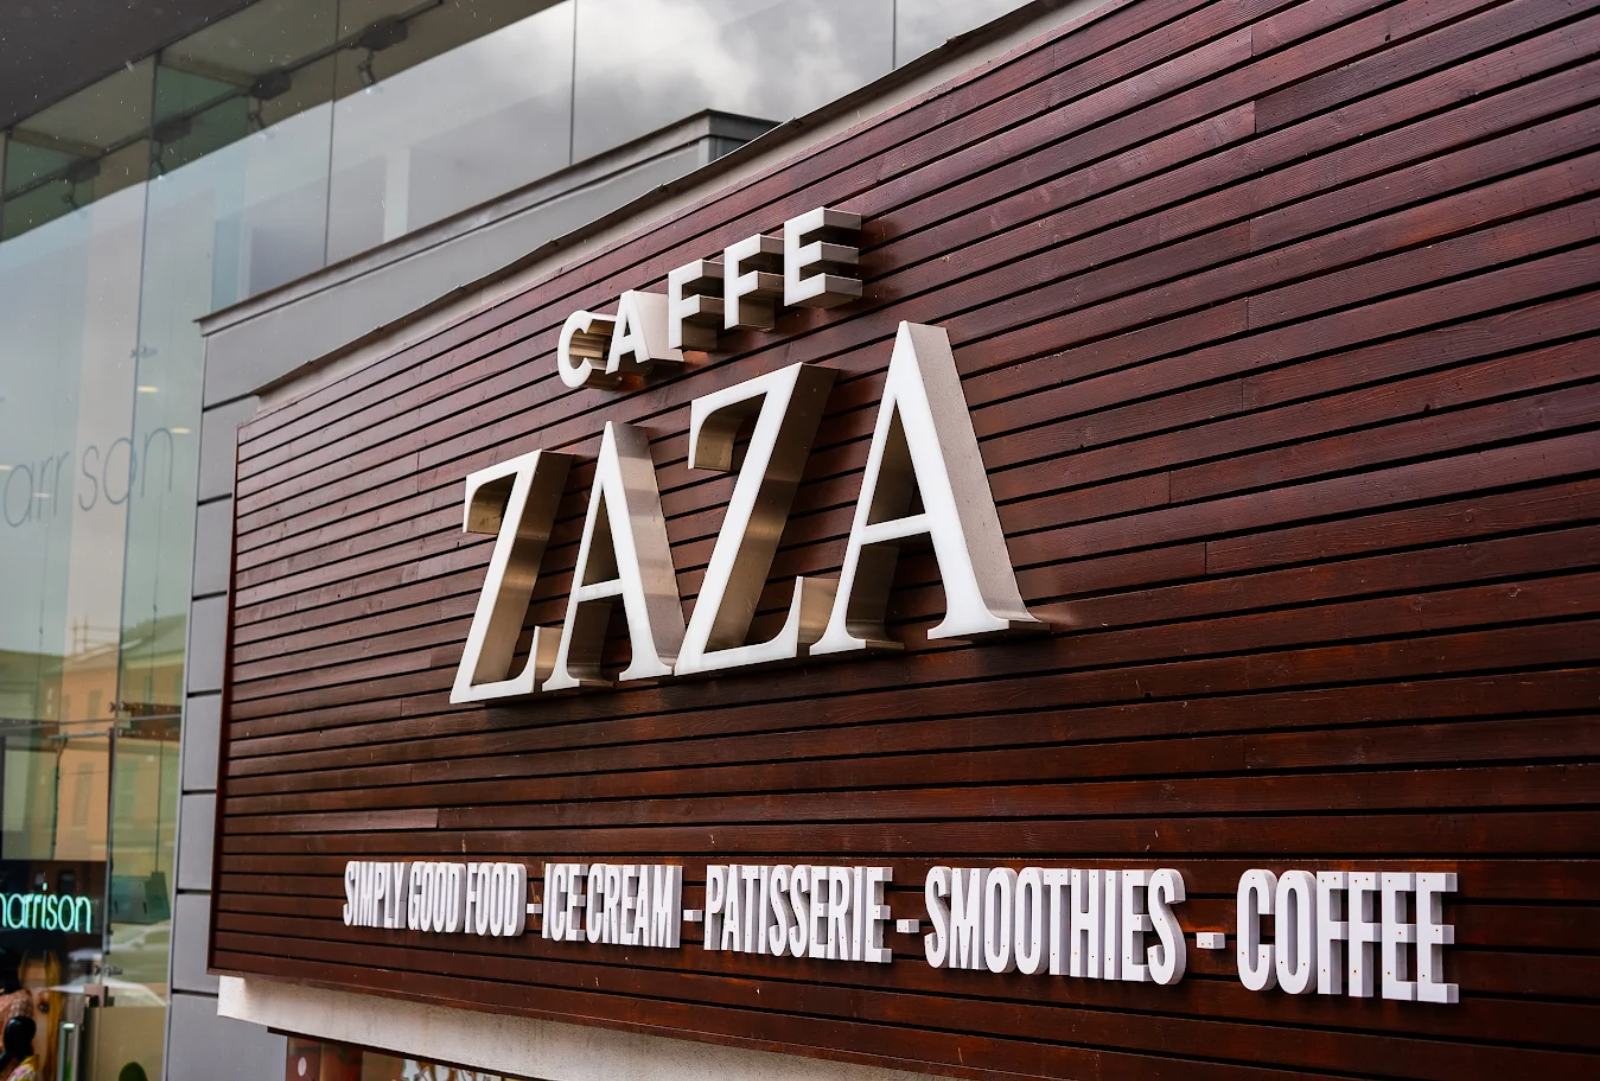 Caffe Zaza